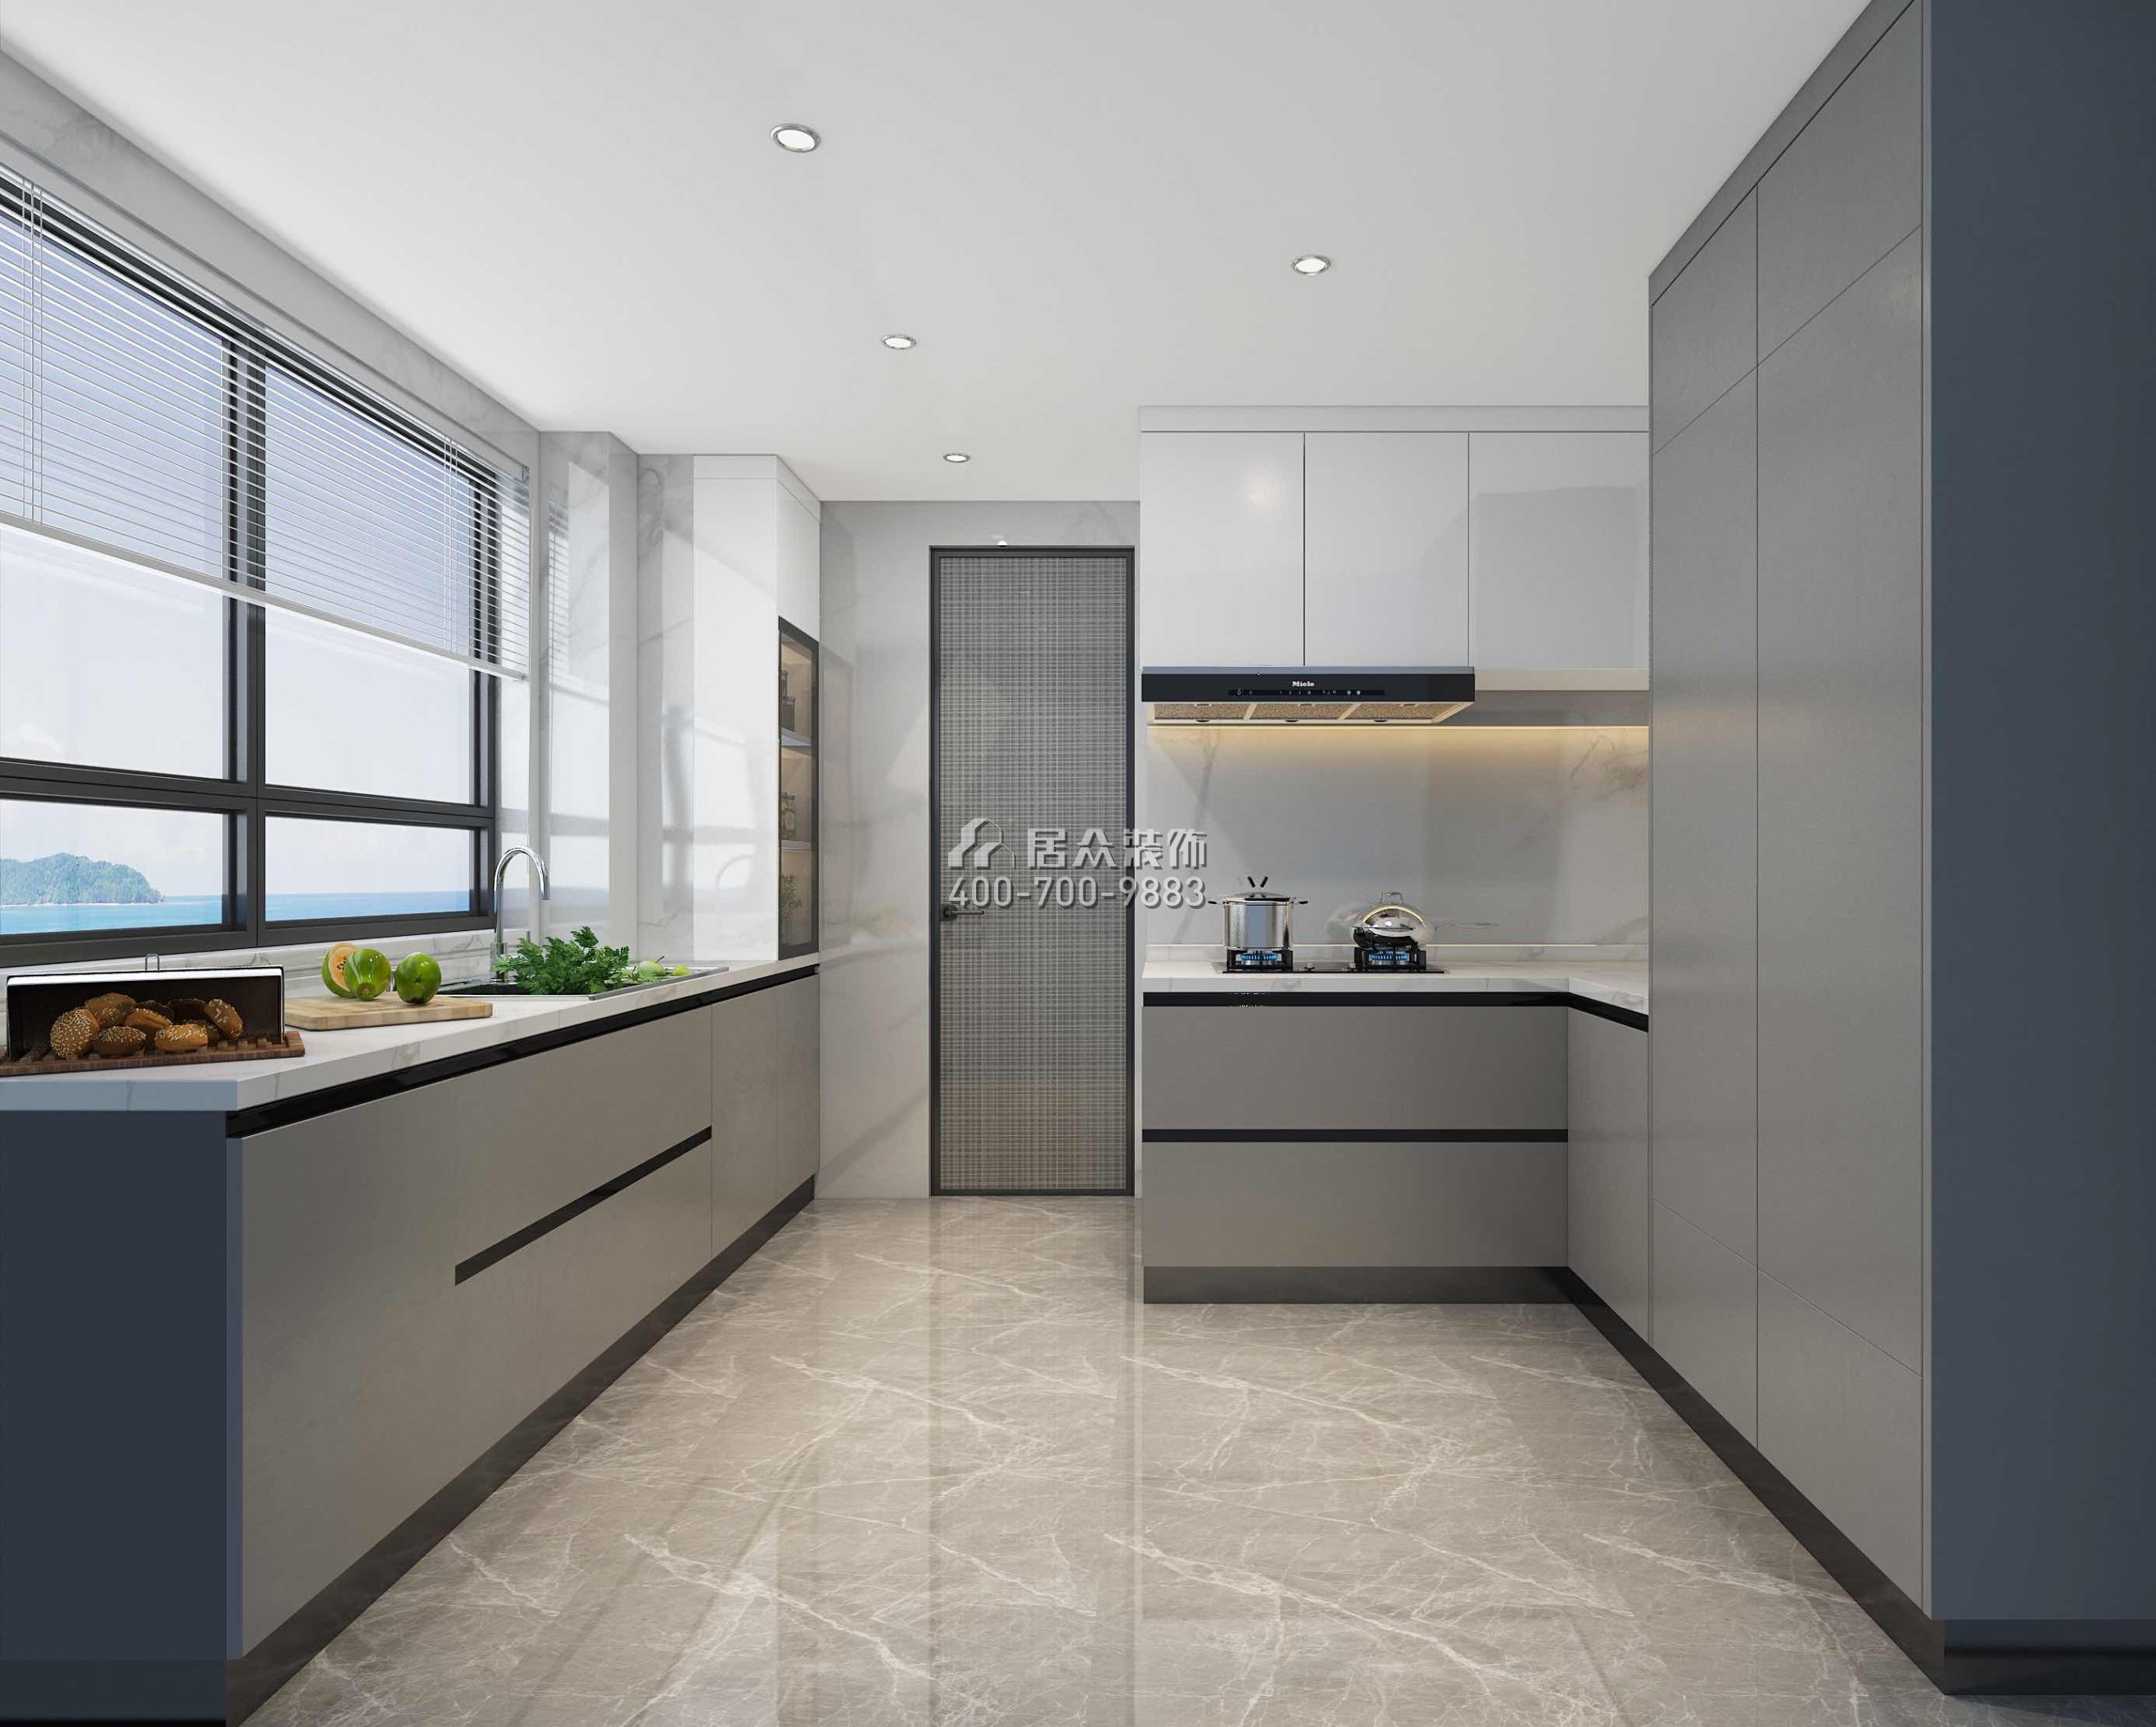 香山美墅五期170平方米现代简约风格平层户型厨房装修效果图